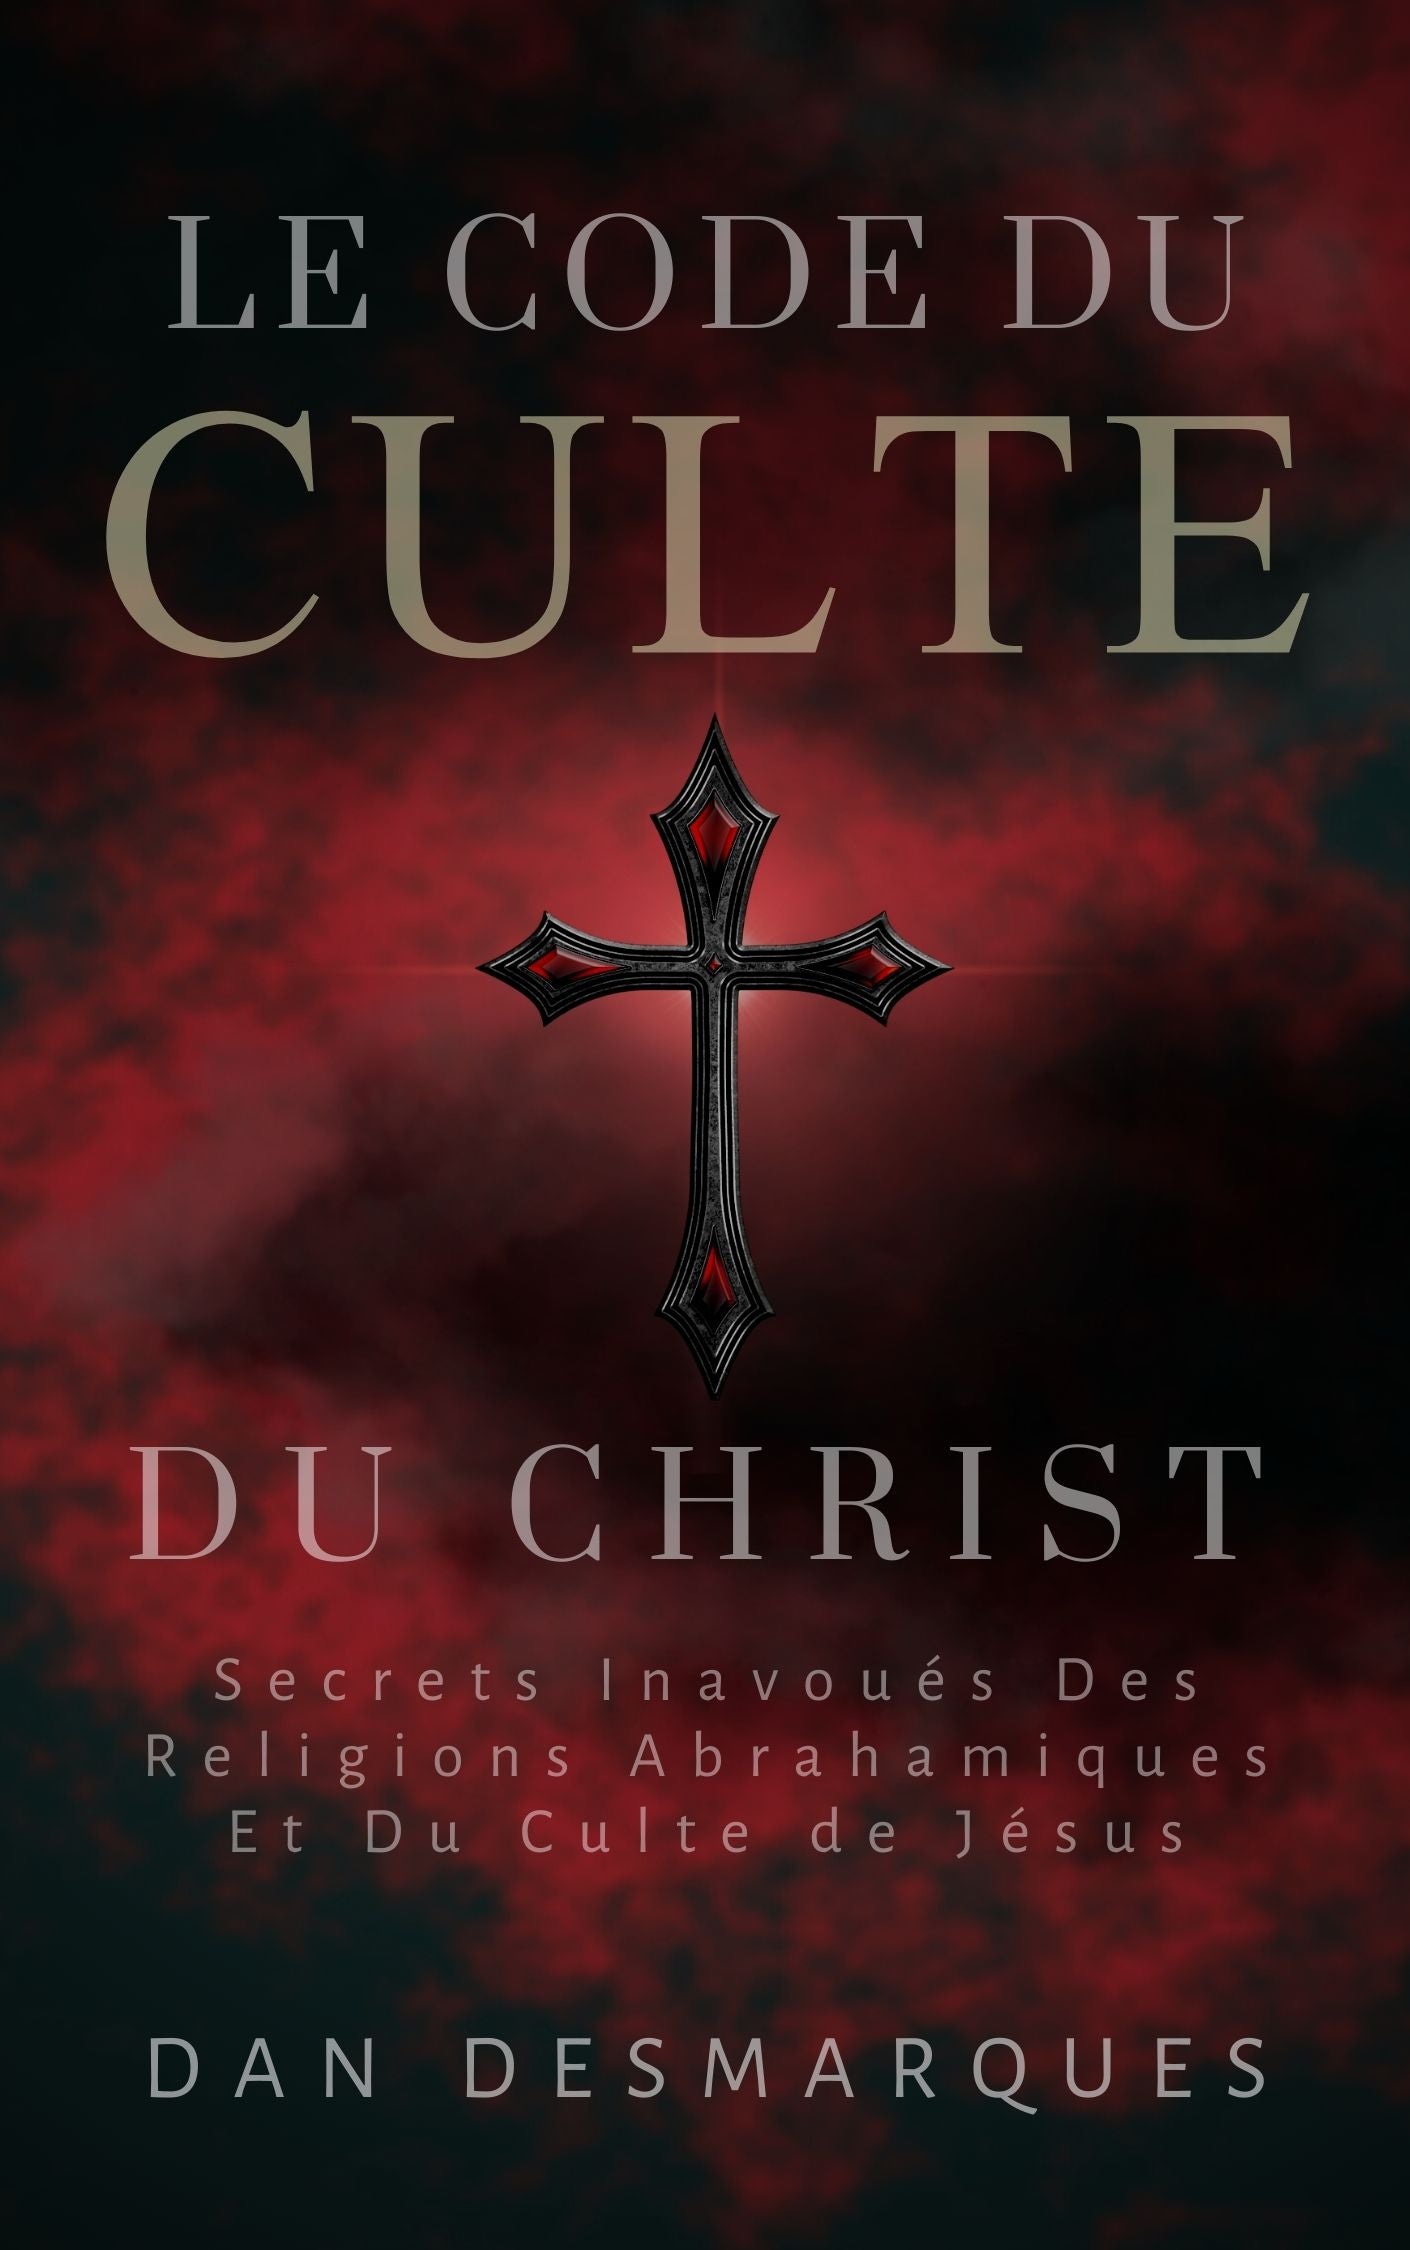 Christ Cult Codex French PDF